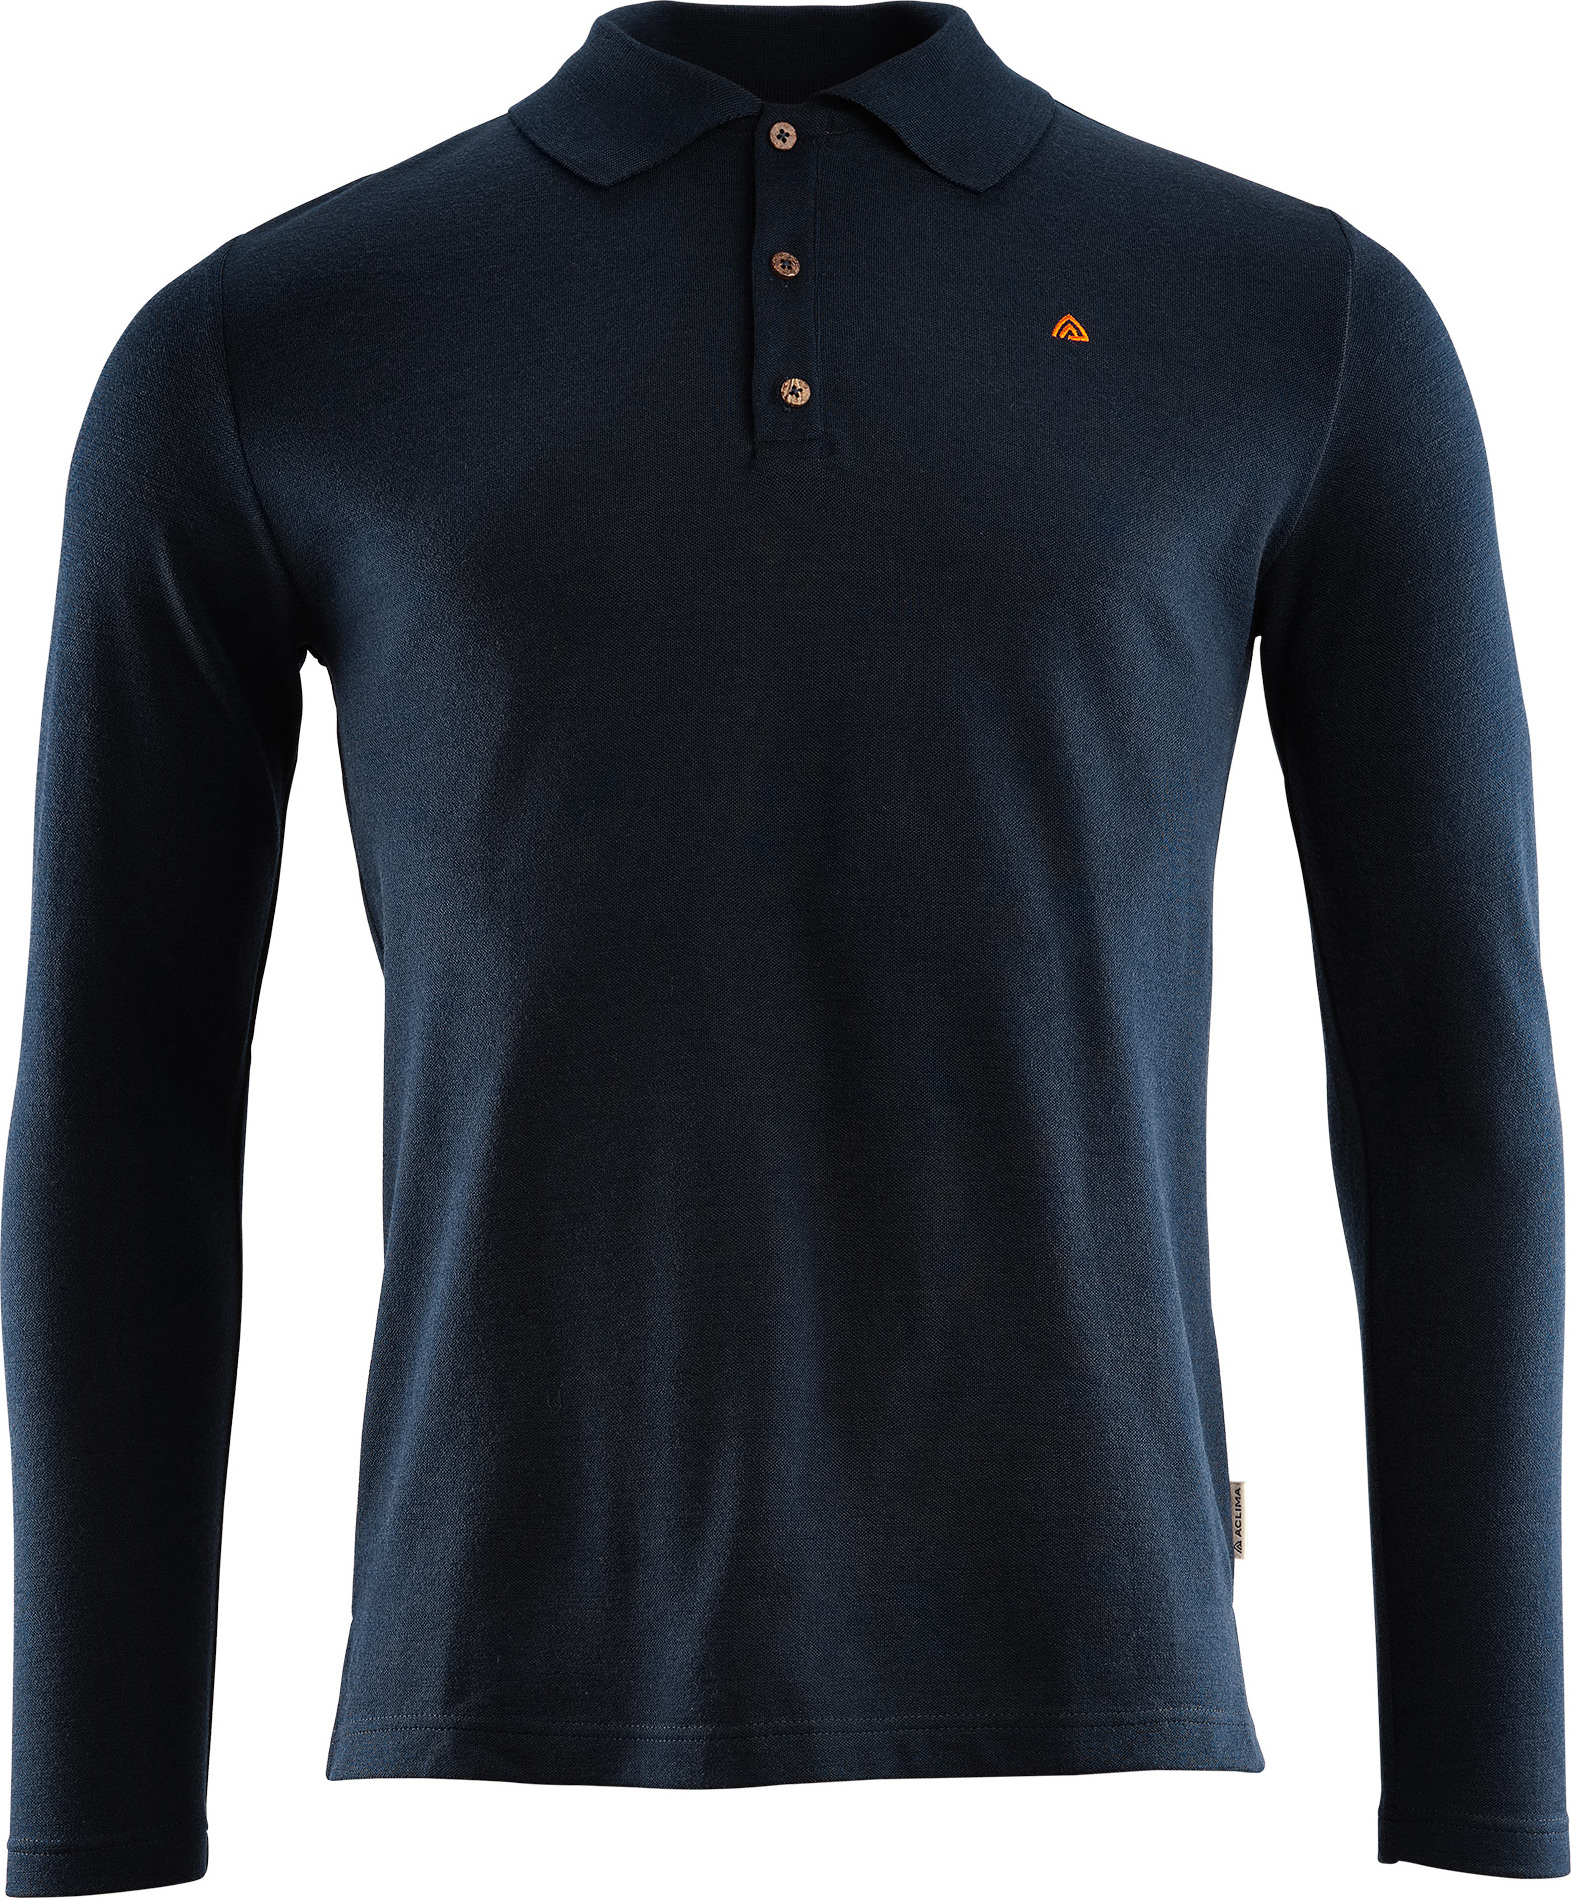 Aclima Aclima Men's LeisureWool Pique Shirt Long Sleeve Navy Blazer L, Navy Blazer